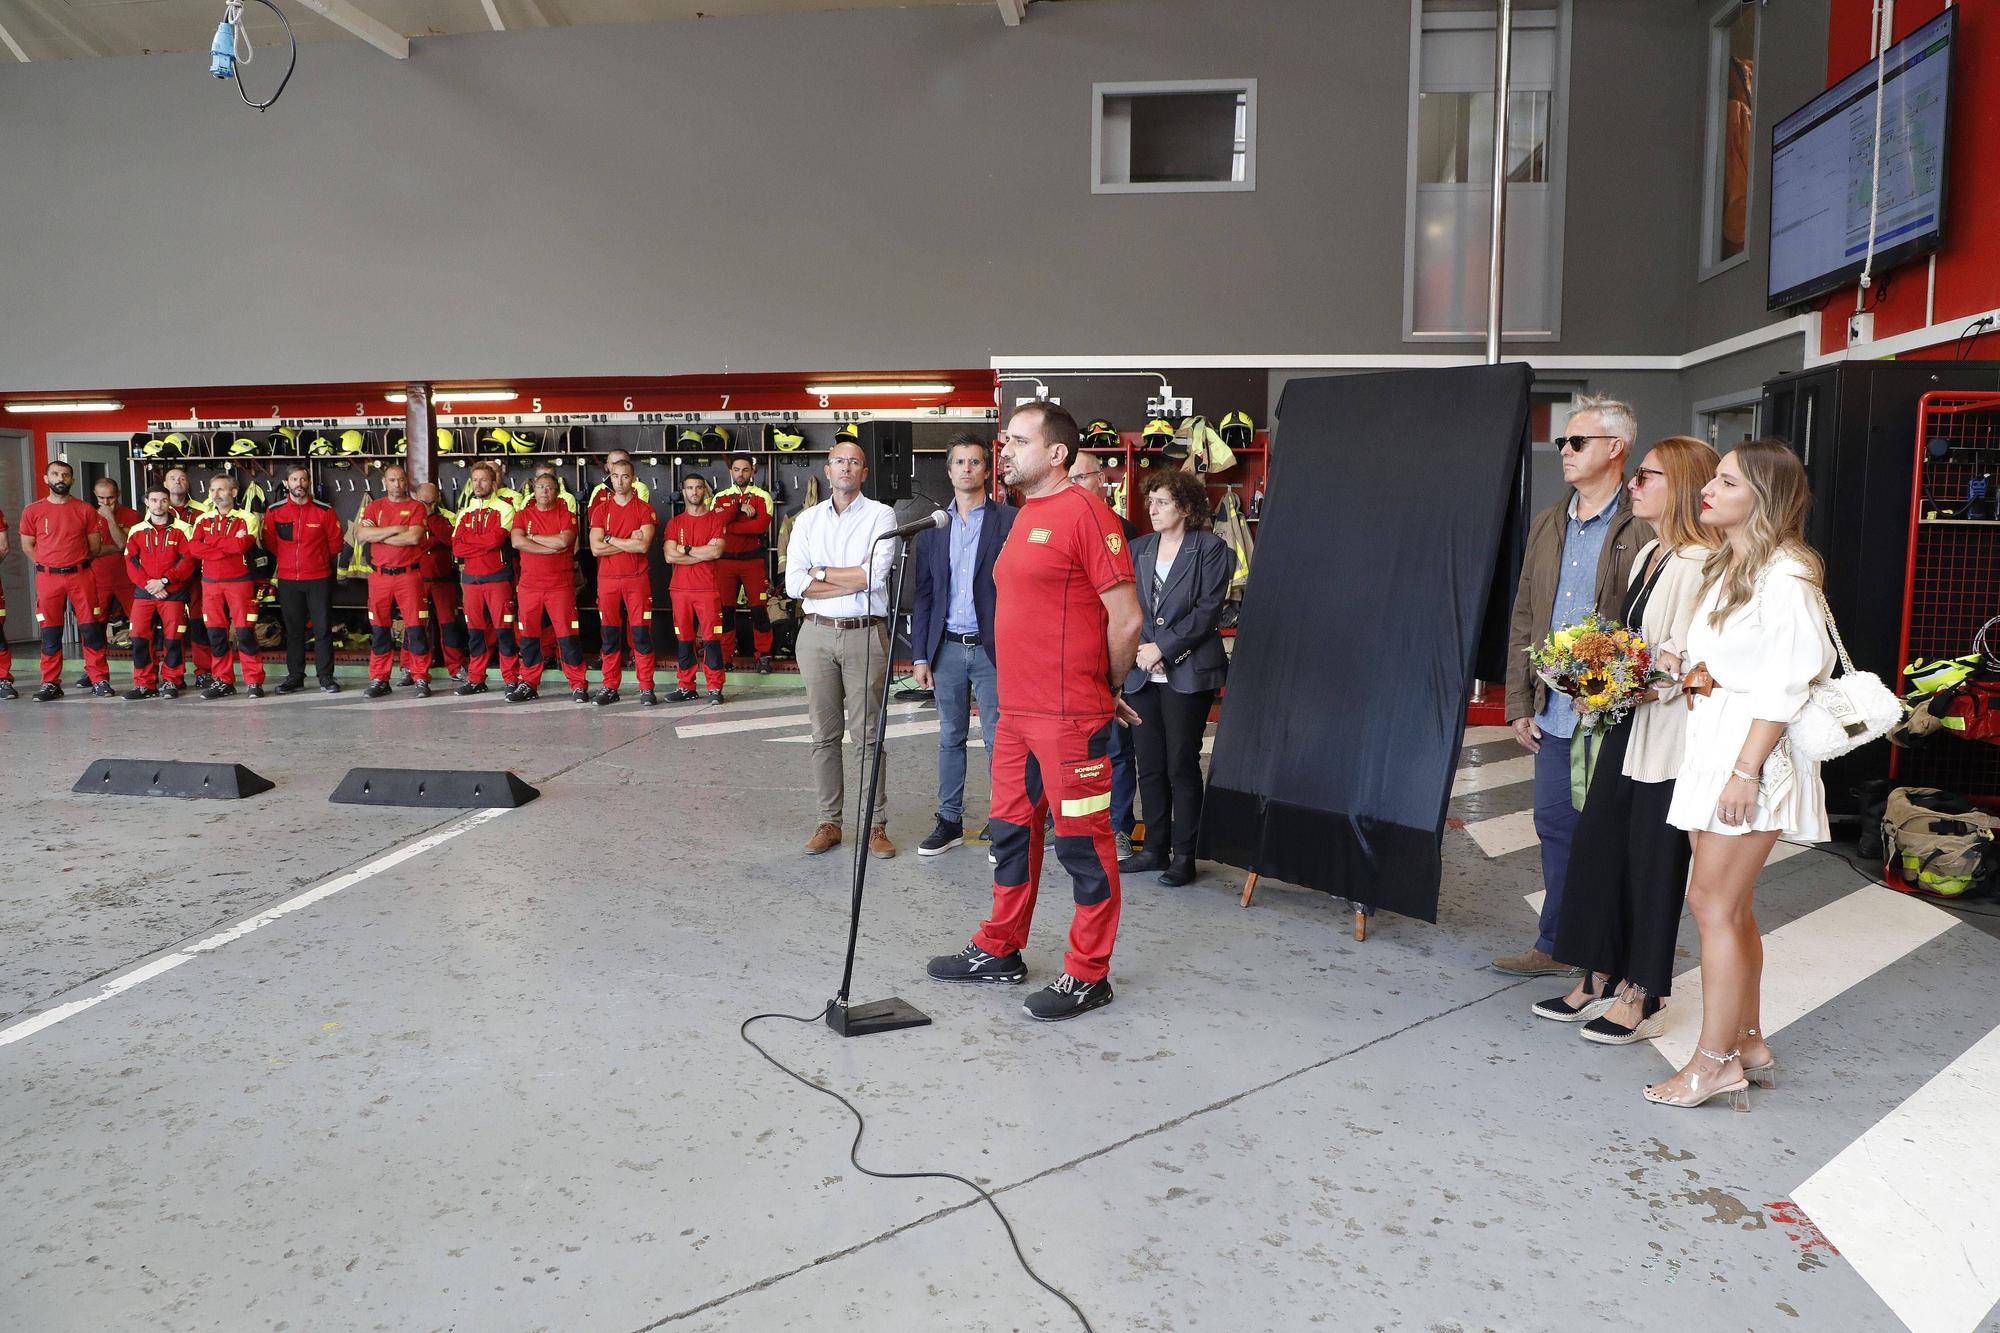 La capital gallega rinde homenaje al bombero Jorge Corbacho en el primer aniversario de su muerte en acto de servicio